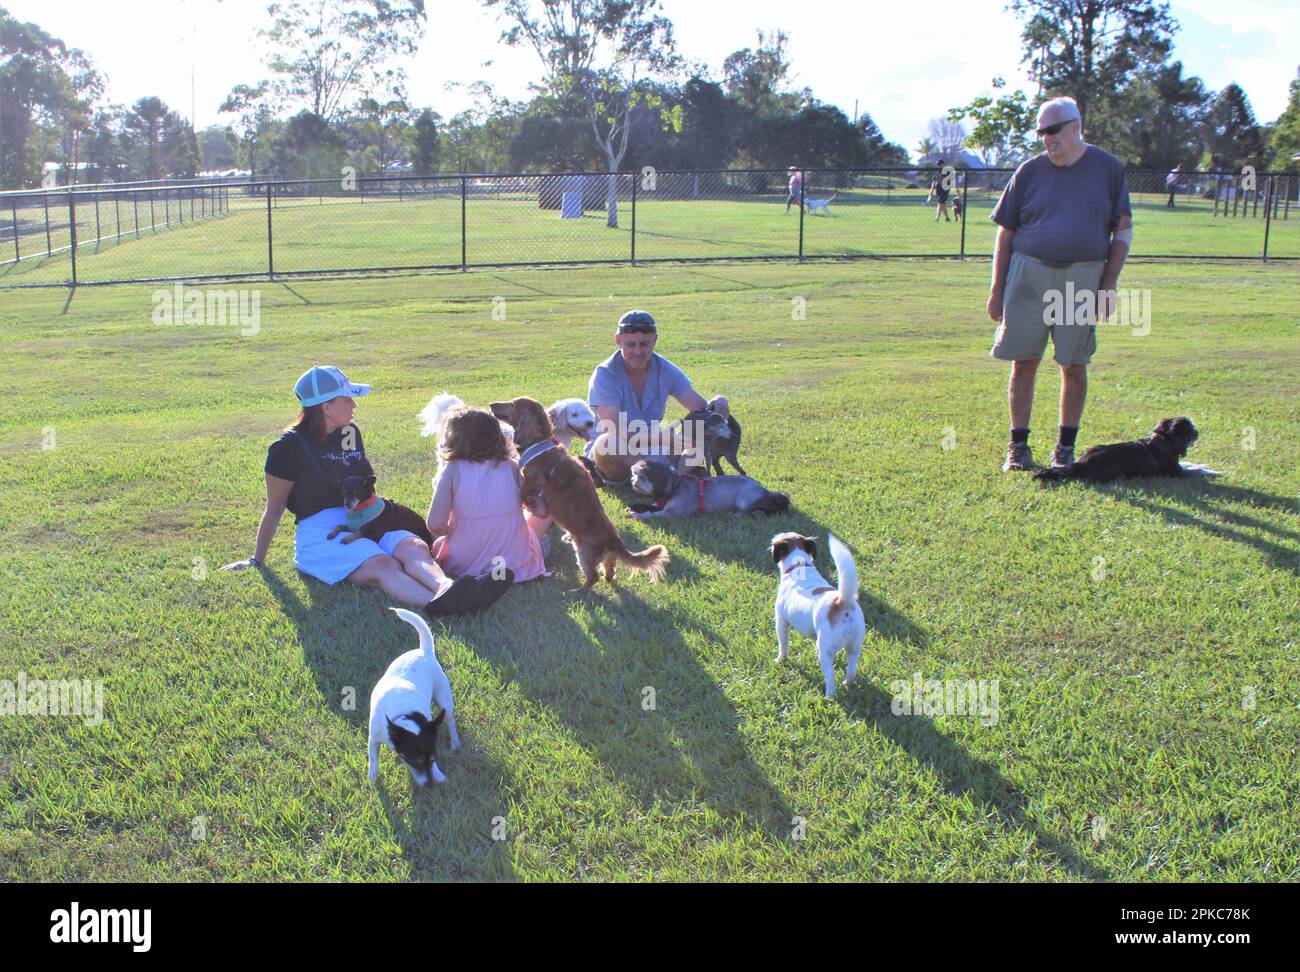 Riverdale Small Dog Park, Logan City, Queensland, Australie. Loisirs de groupe multi-générationnels dans une enceinte de chien hors-laisse. Banque D'Images